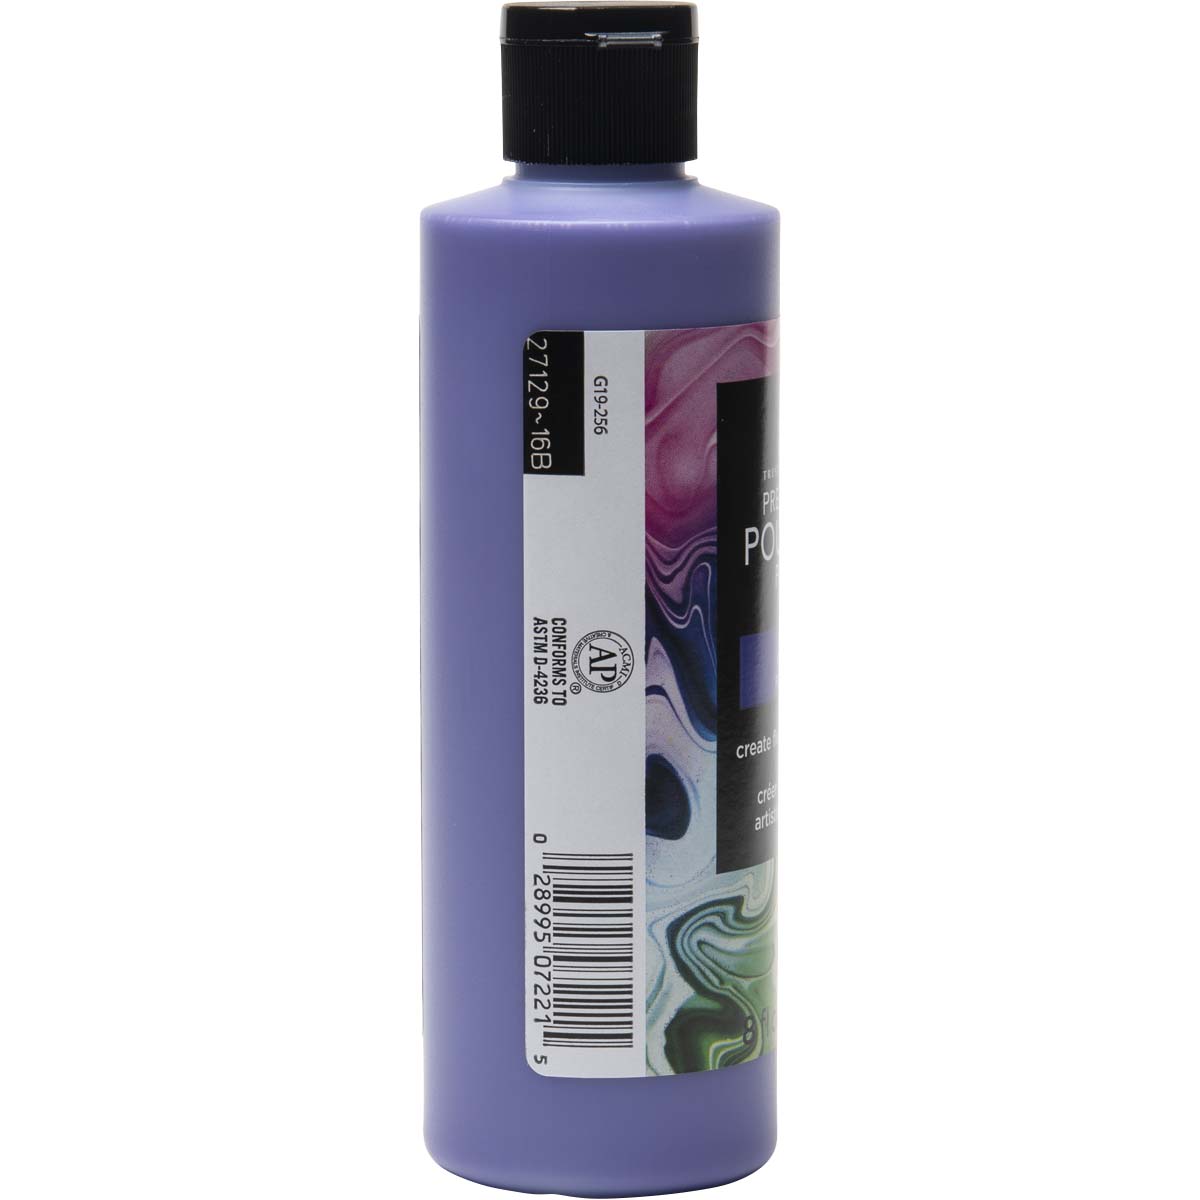 FolkArt ® Pre-mixed Pouring Paint - Purple, 8 oz. - 7221